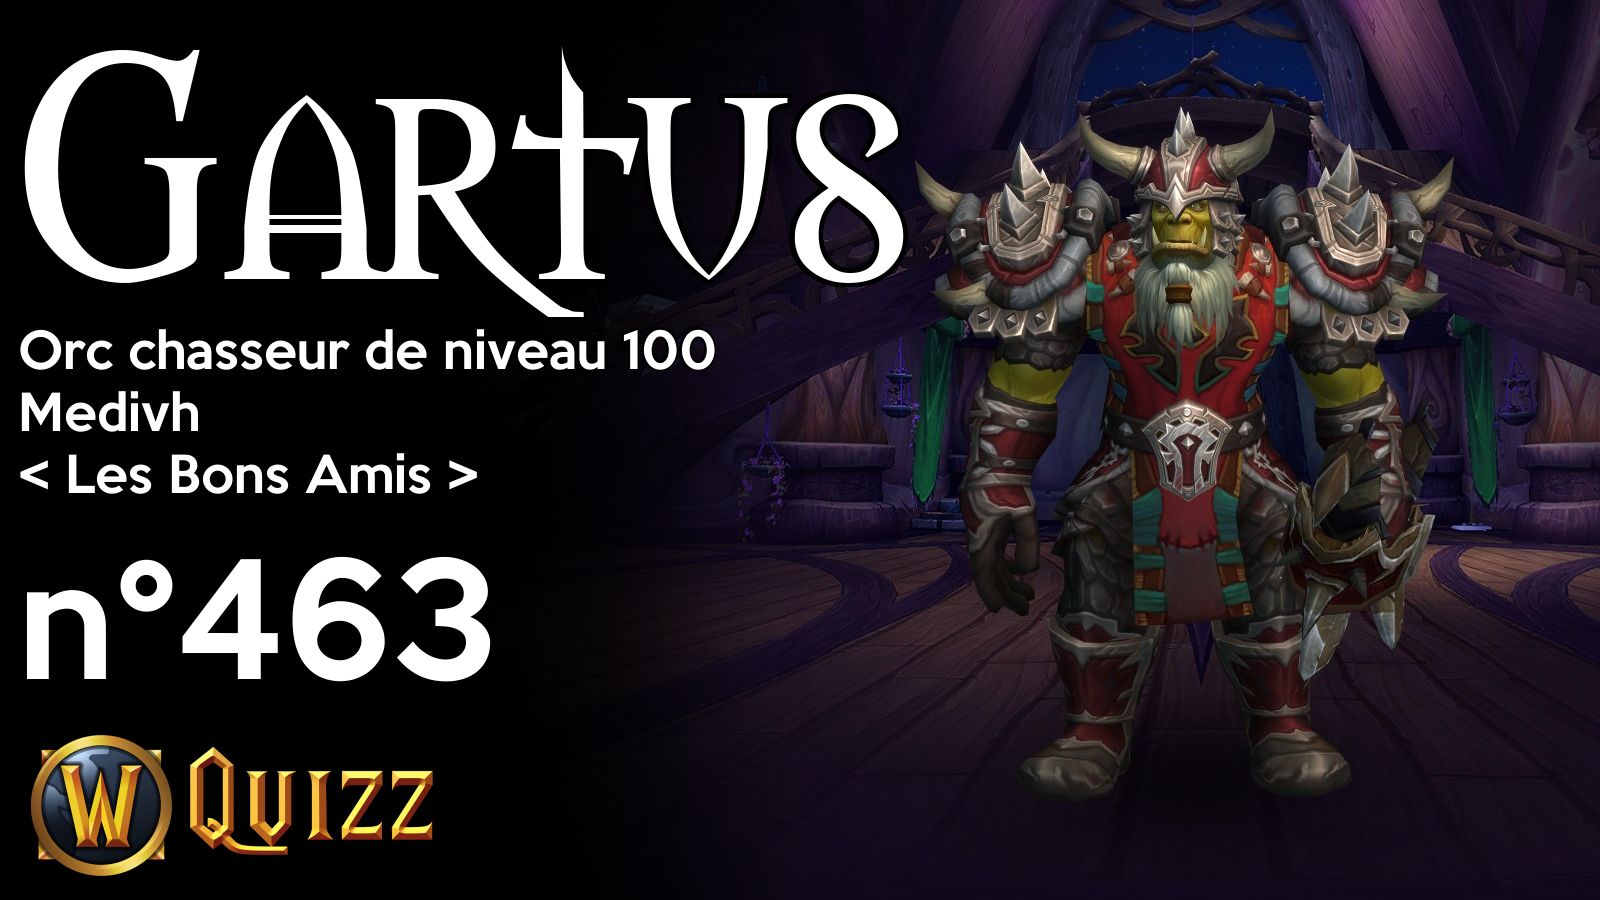 Gartus, Orc chasseur de niveau 100, Medivh